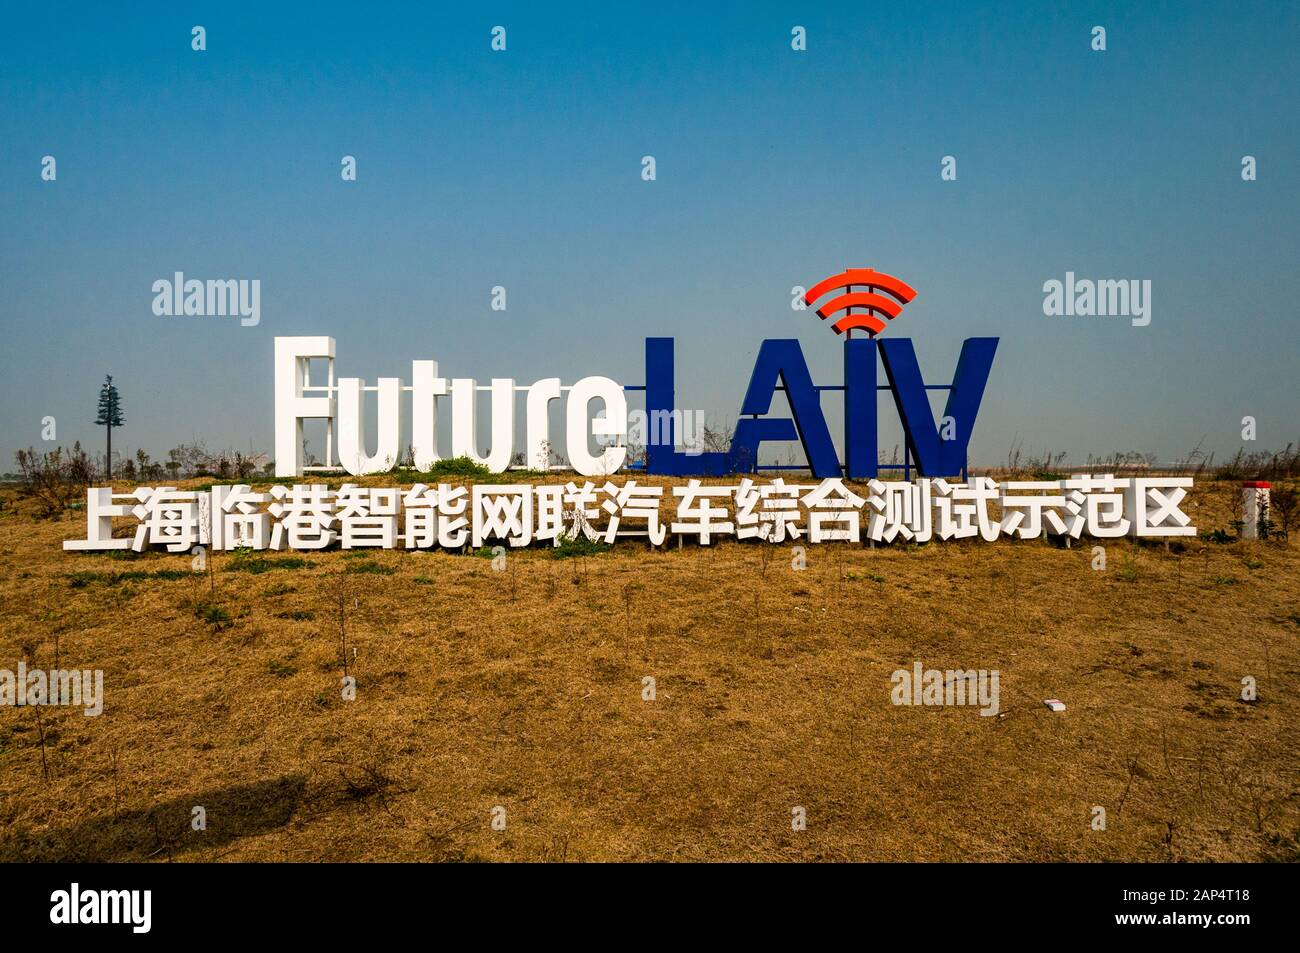 Das autonome Fahrzeugtestgelände in Lingang, Shanghai, das speziell für Nutzfahrzeuge konzipiert ist. Stockfoto